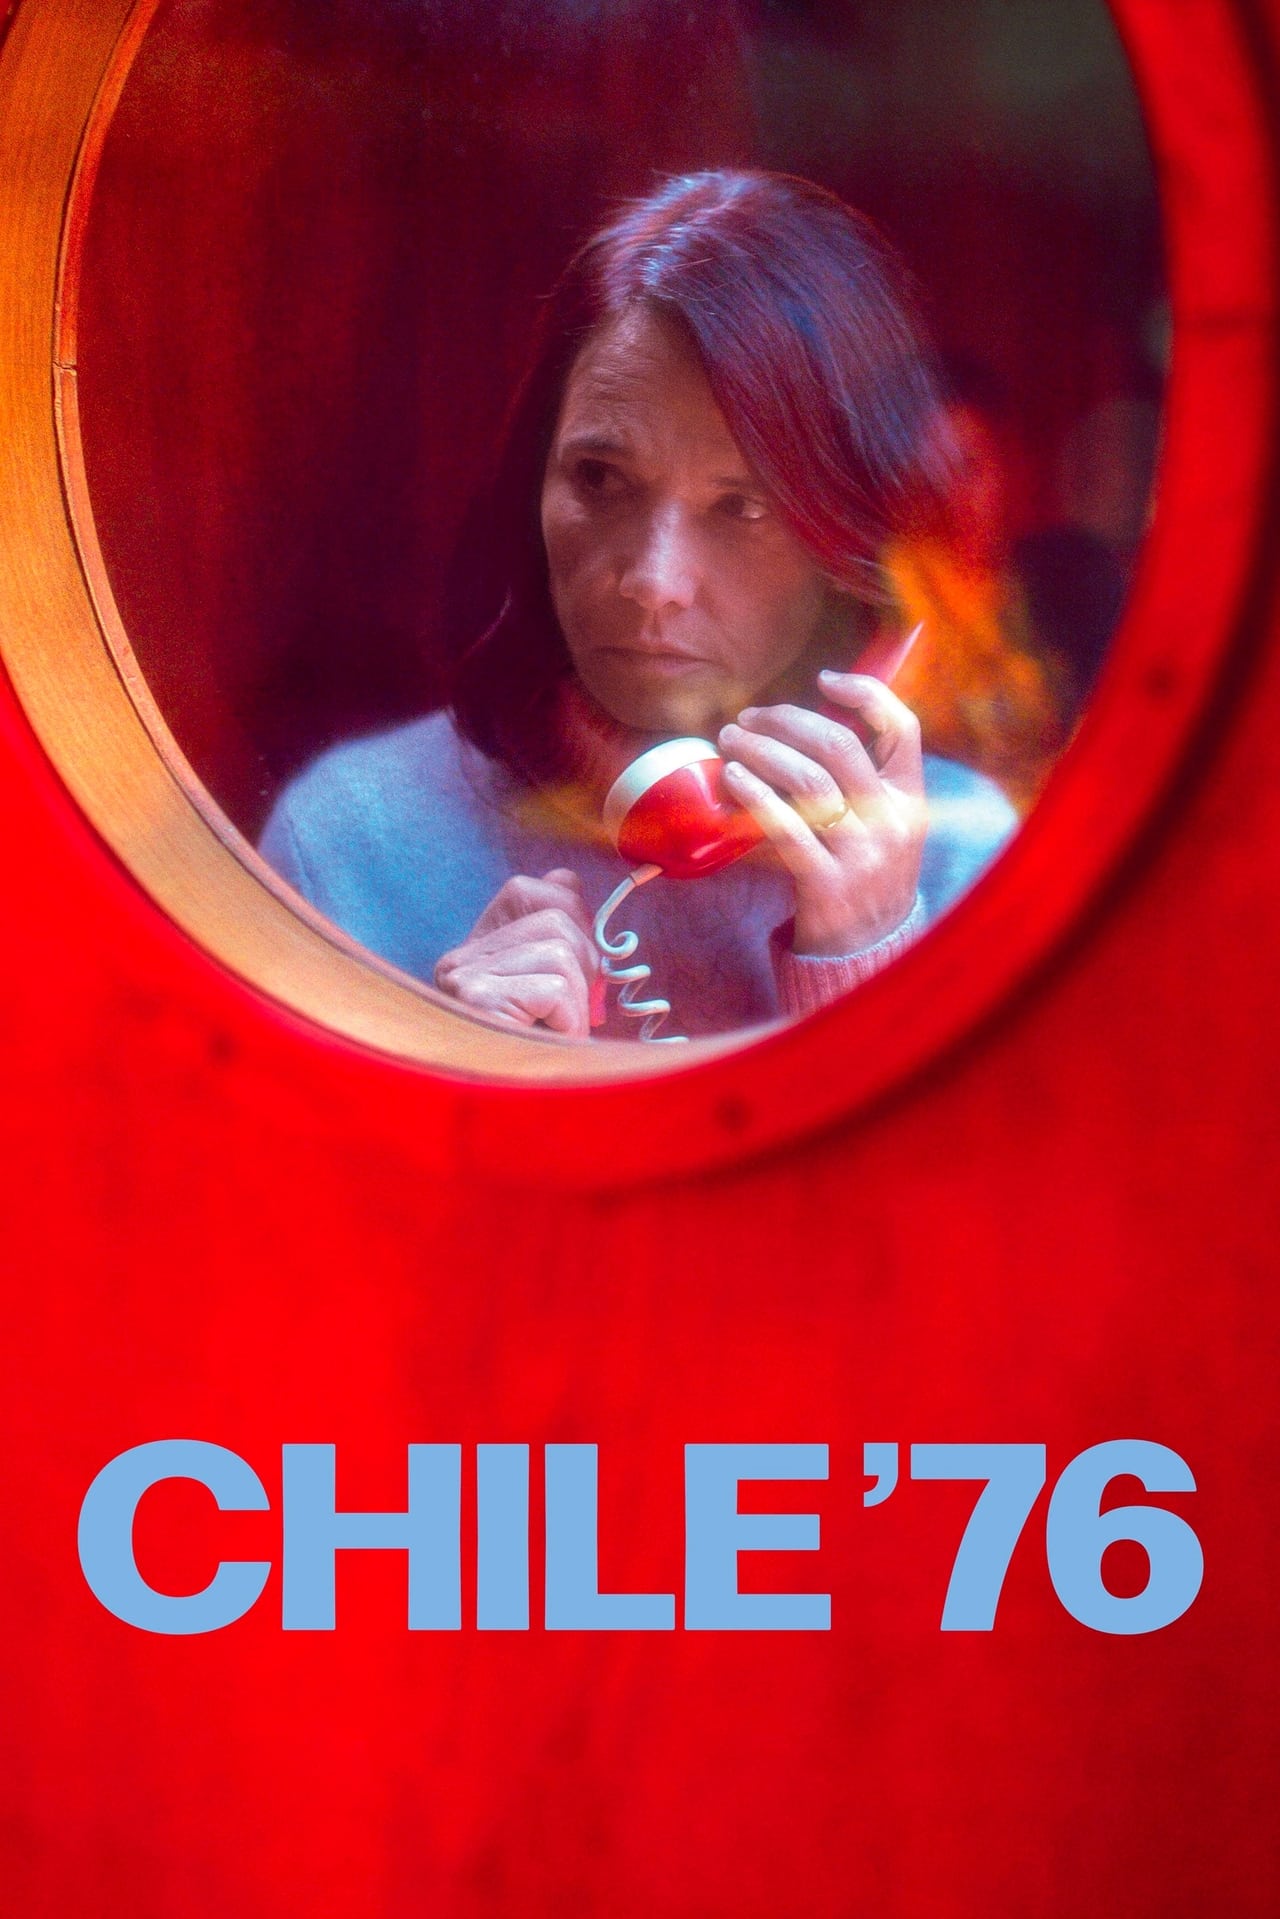 Chile ’76